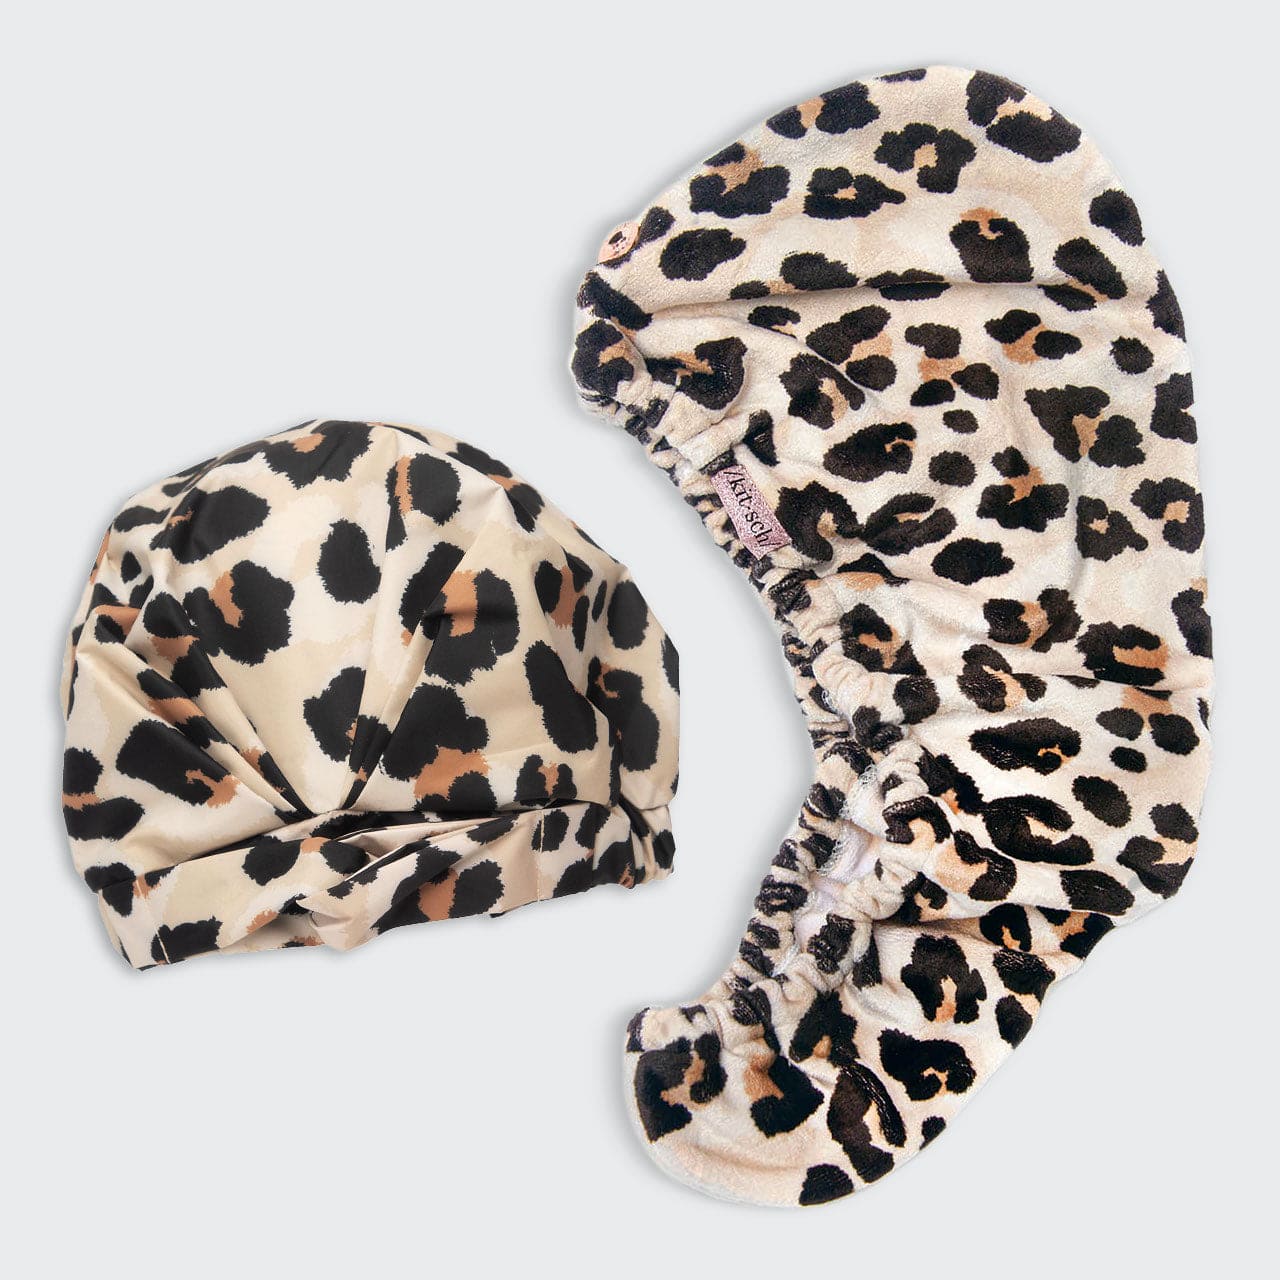 Luxe Leopard Shower Cap & Hair Towel Bundle Bundles Bundles 